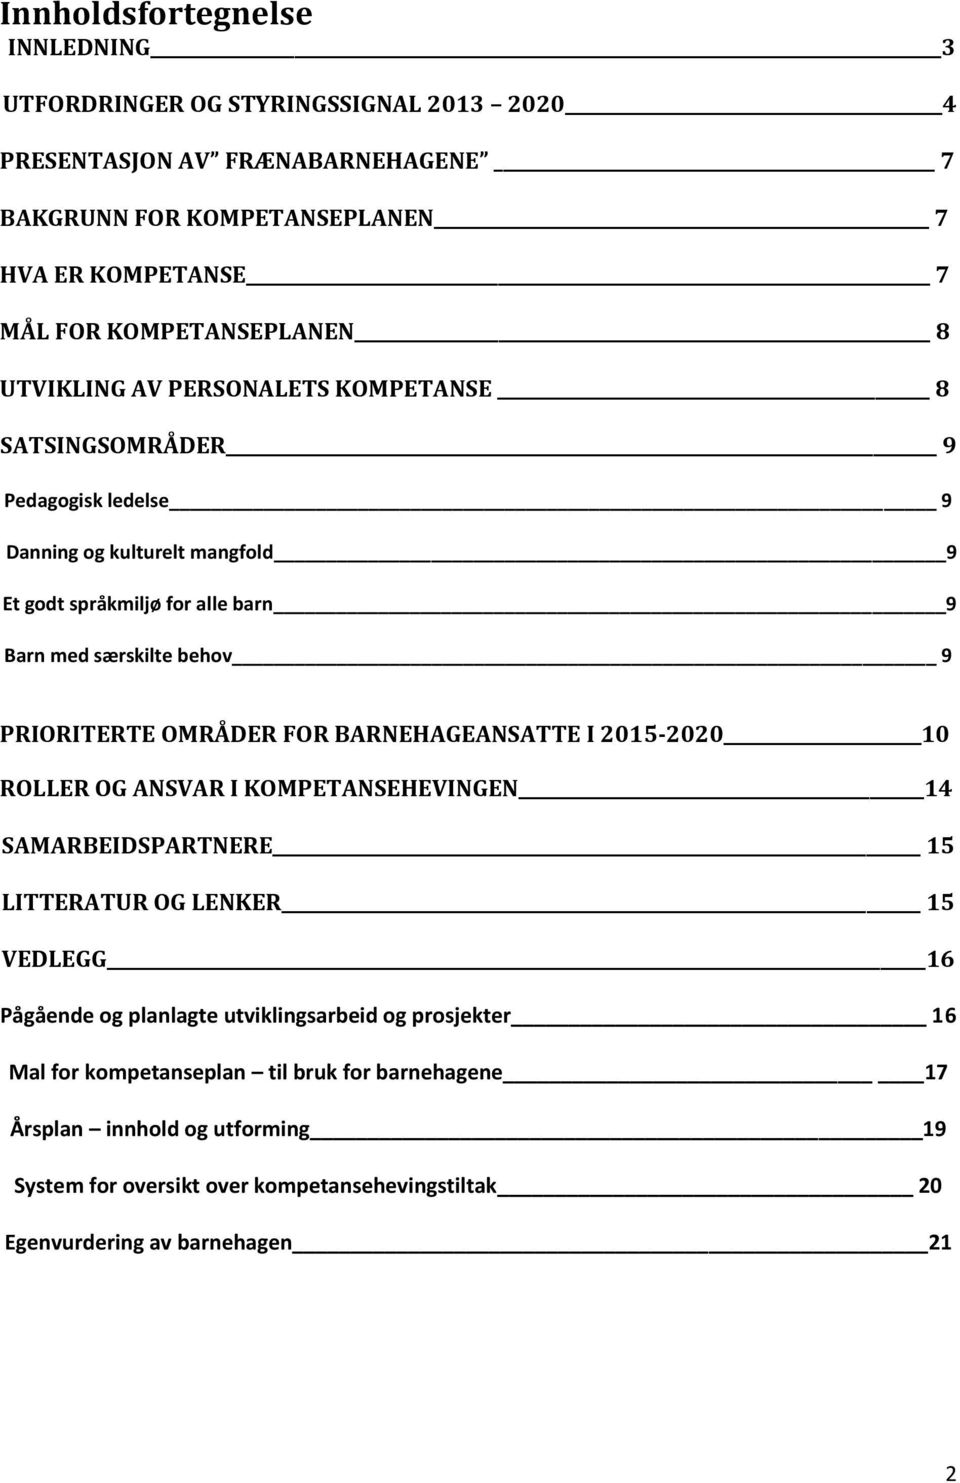 behov 9 PRIORITERTE OMRÅDER FOR BARNEHAGEANSATTE I 2015-2020 10 ROLLER OG ANSVAR I KOMPETANSEHEVINGEN 14 SAMARBEIDSPARTNERE 15 LITTERATUR OG LENKER 15 VEDLEGG 16 Pågående og planlagte